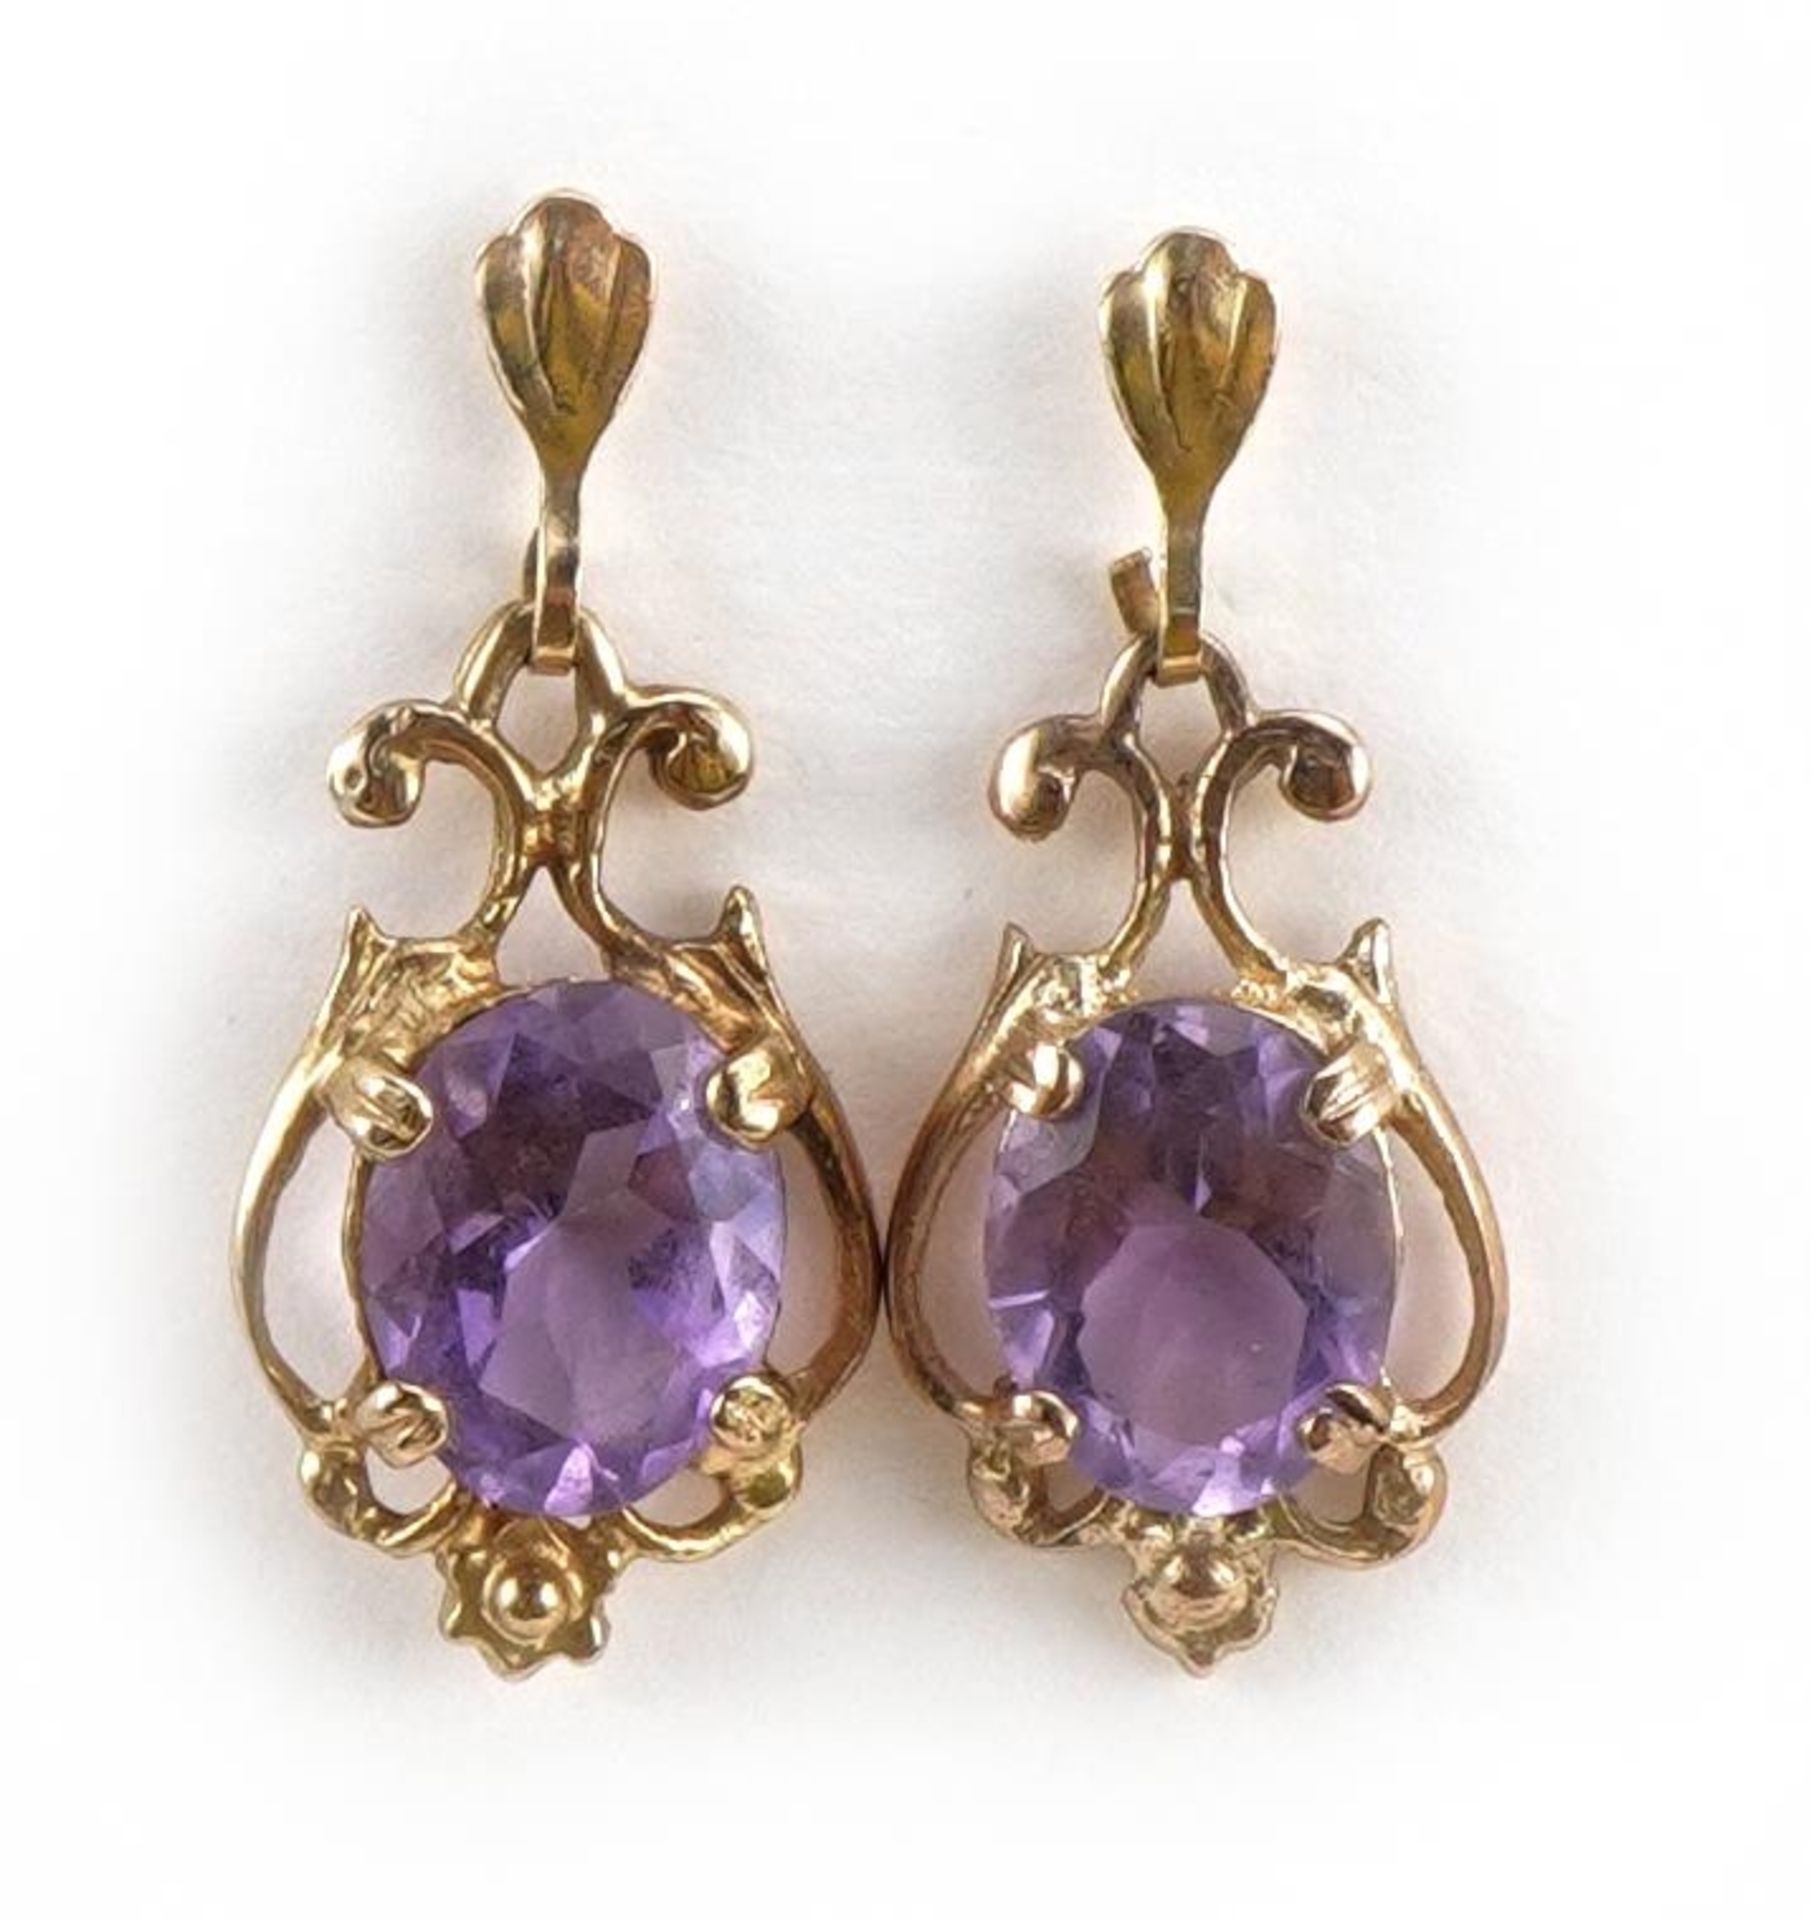 Pair of 9ct gold amethyst drop earrings, 2.5cm high, 2.3g